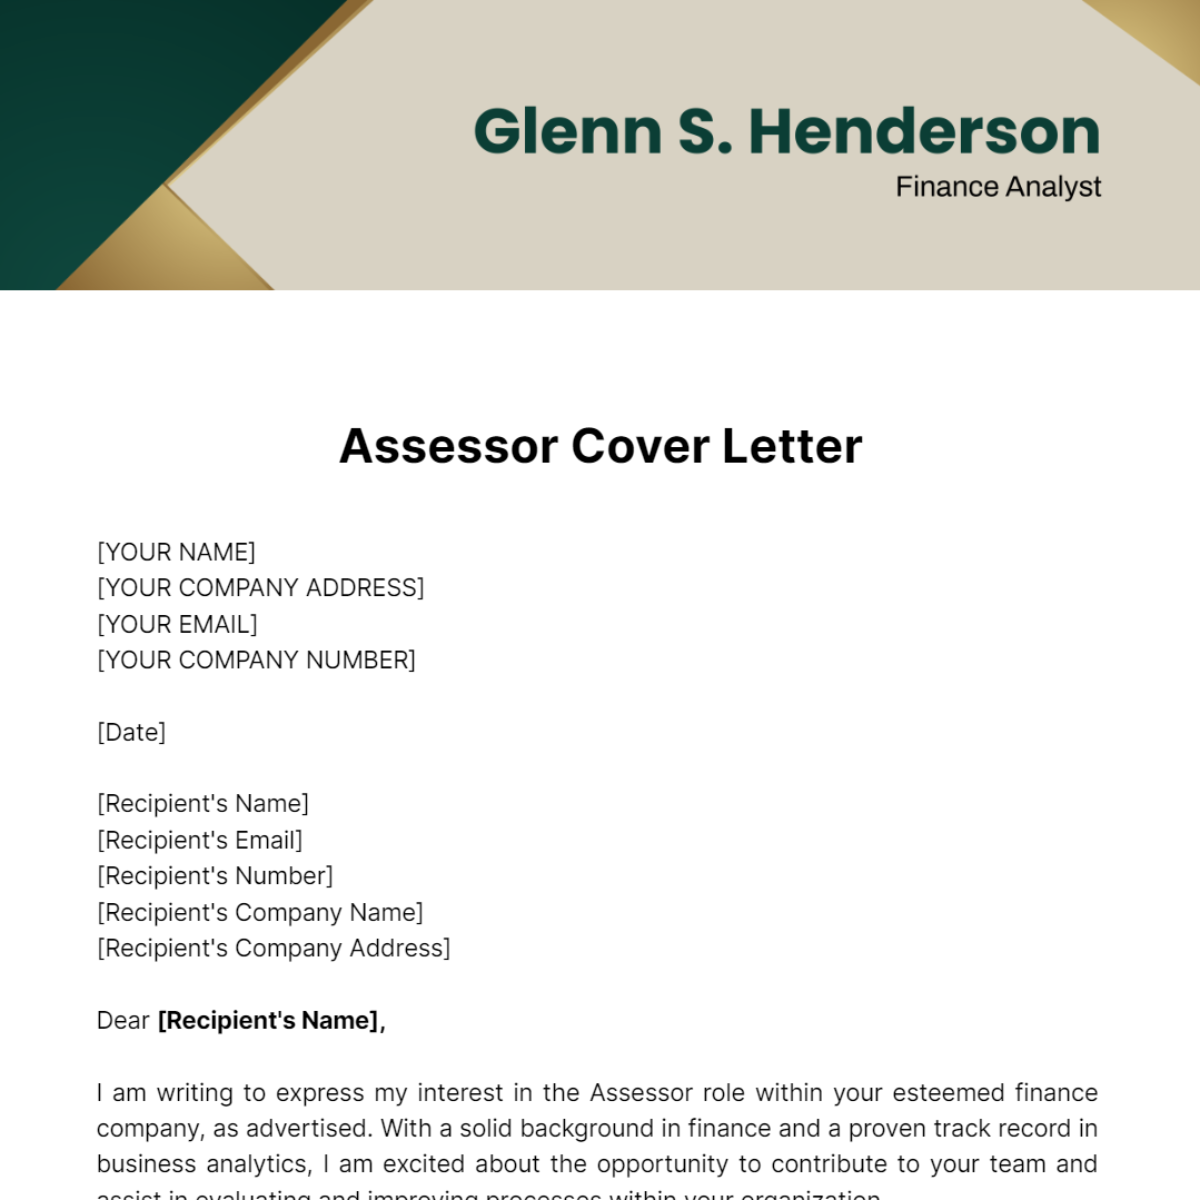 Assessor Cover Letter Template